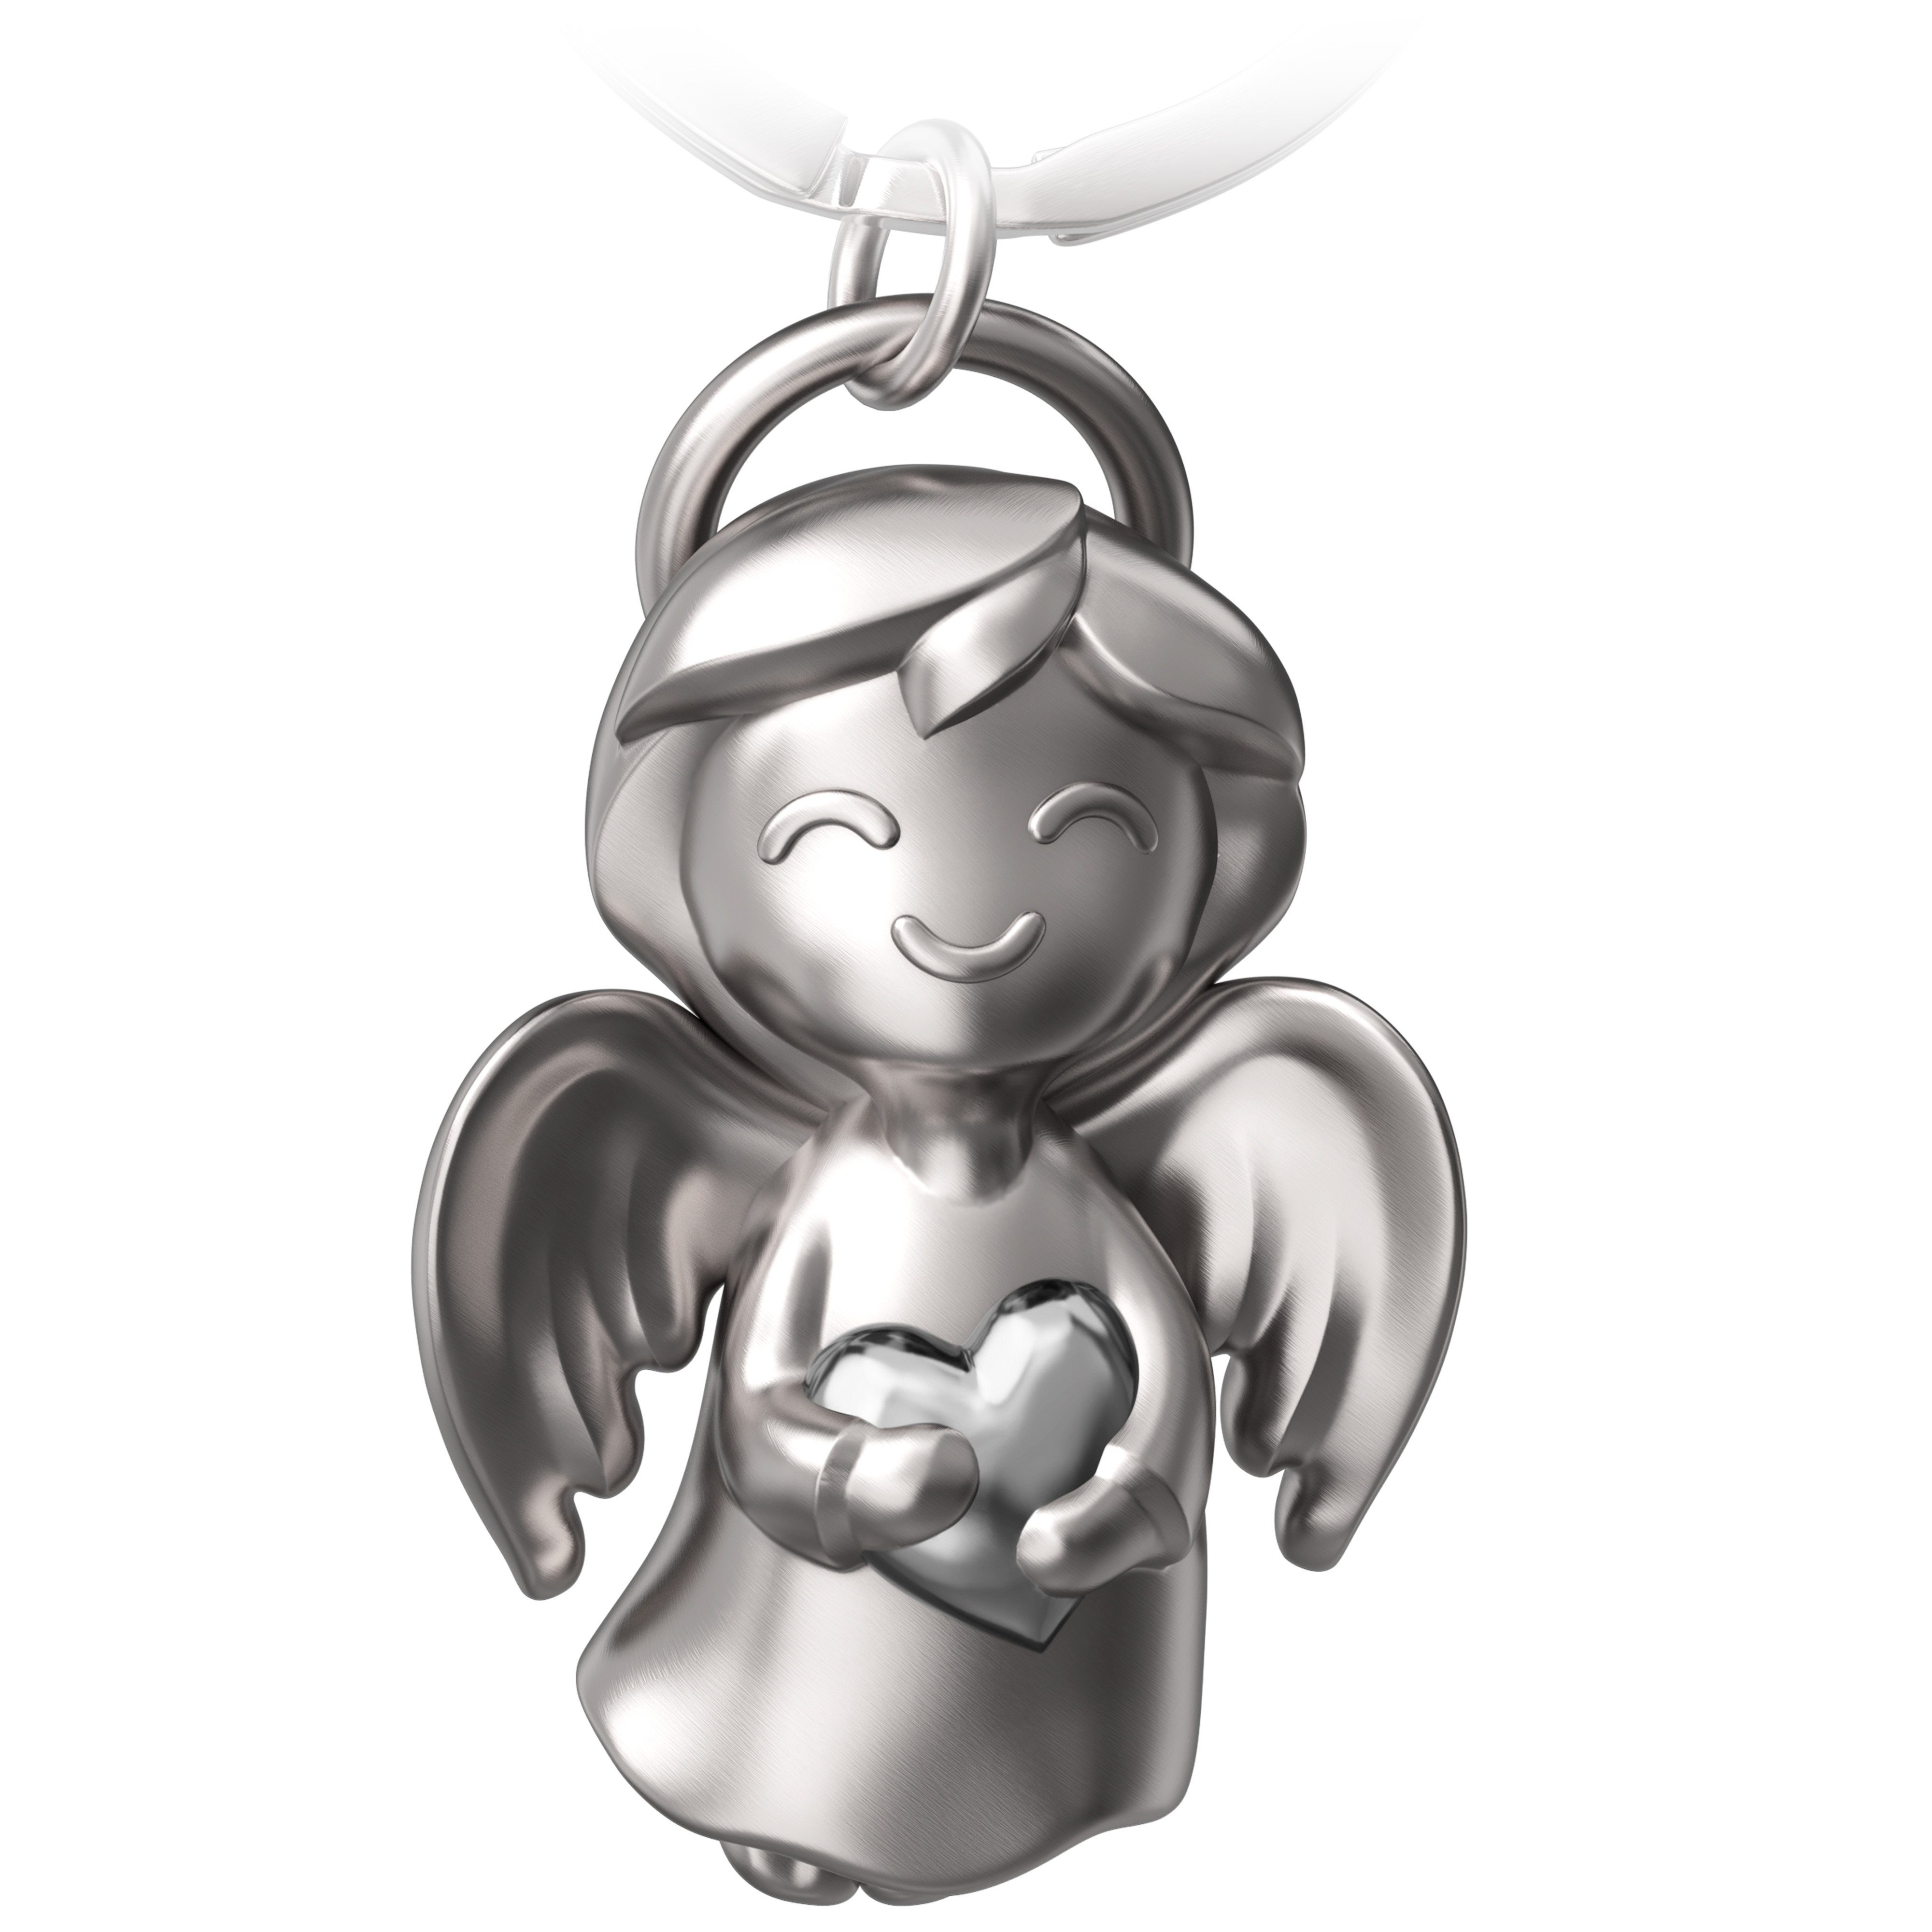 FABACH Schlüsselanhänger " Schutzengel Shiny" - Engel Glücksbringer - Glücksengel mit Herz Silber